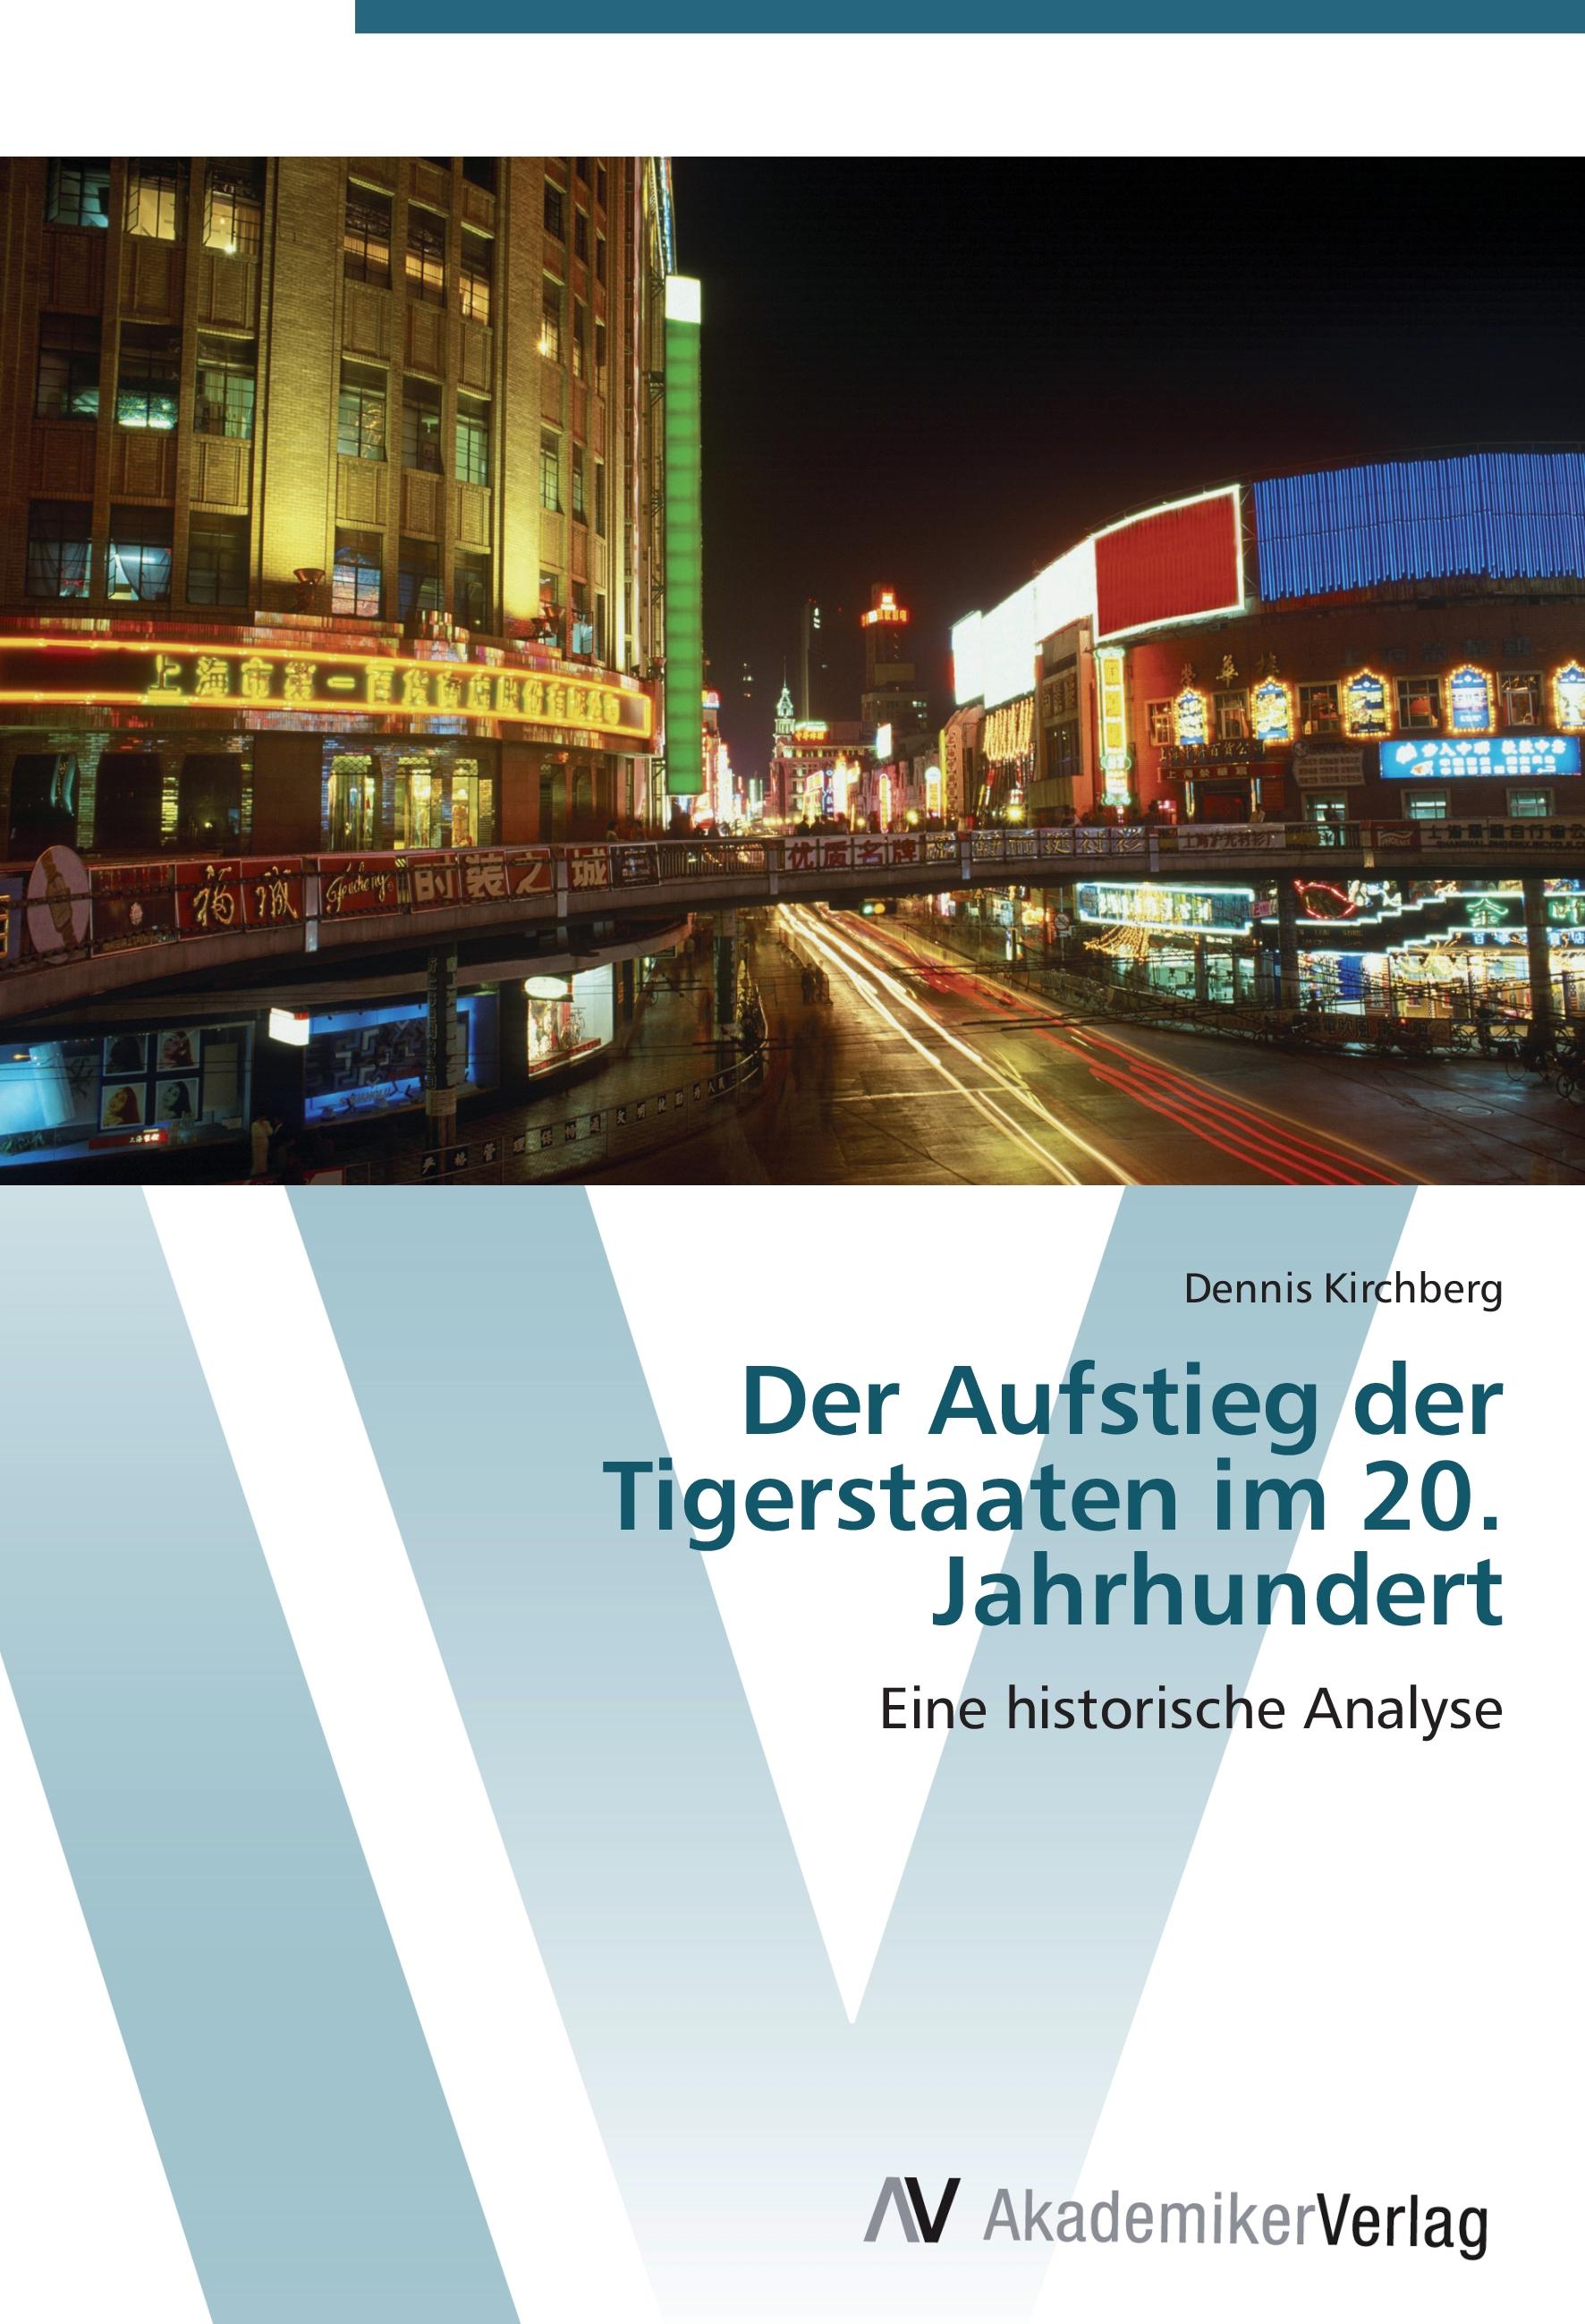 Der Aufstieg der Tigerstaaten im 20. Jahrhundert - Dennis Kirchberg